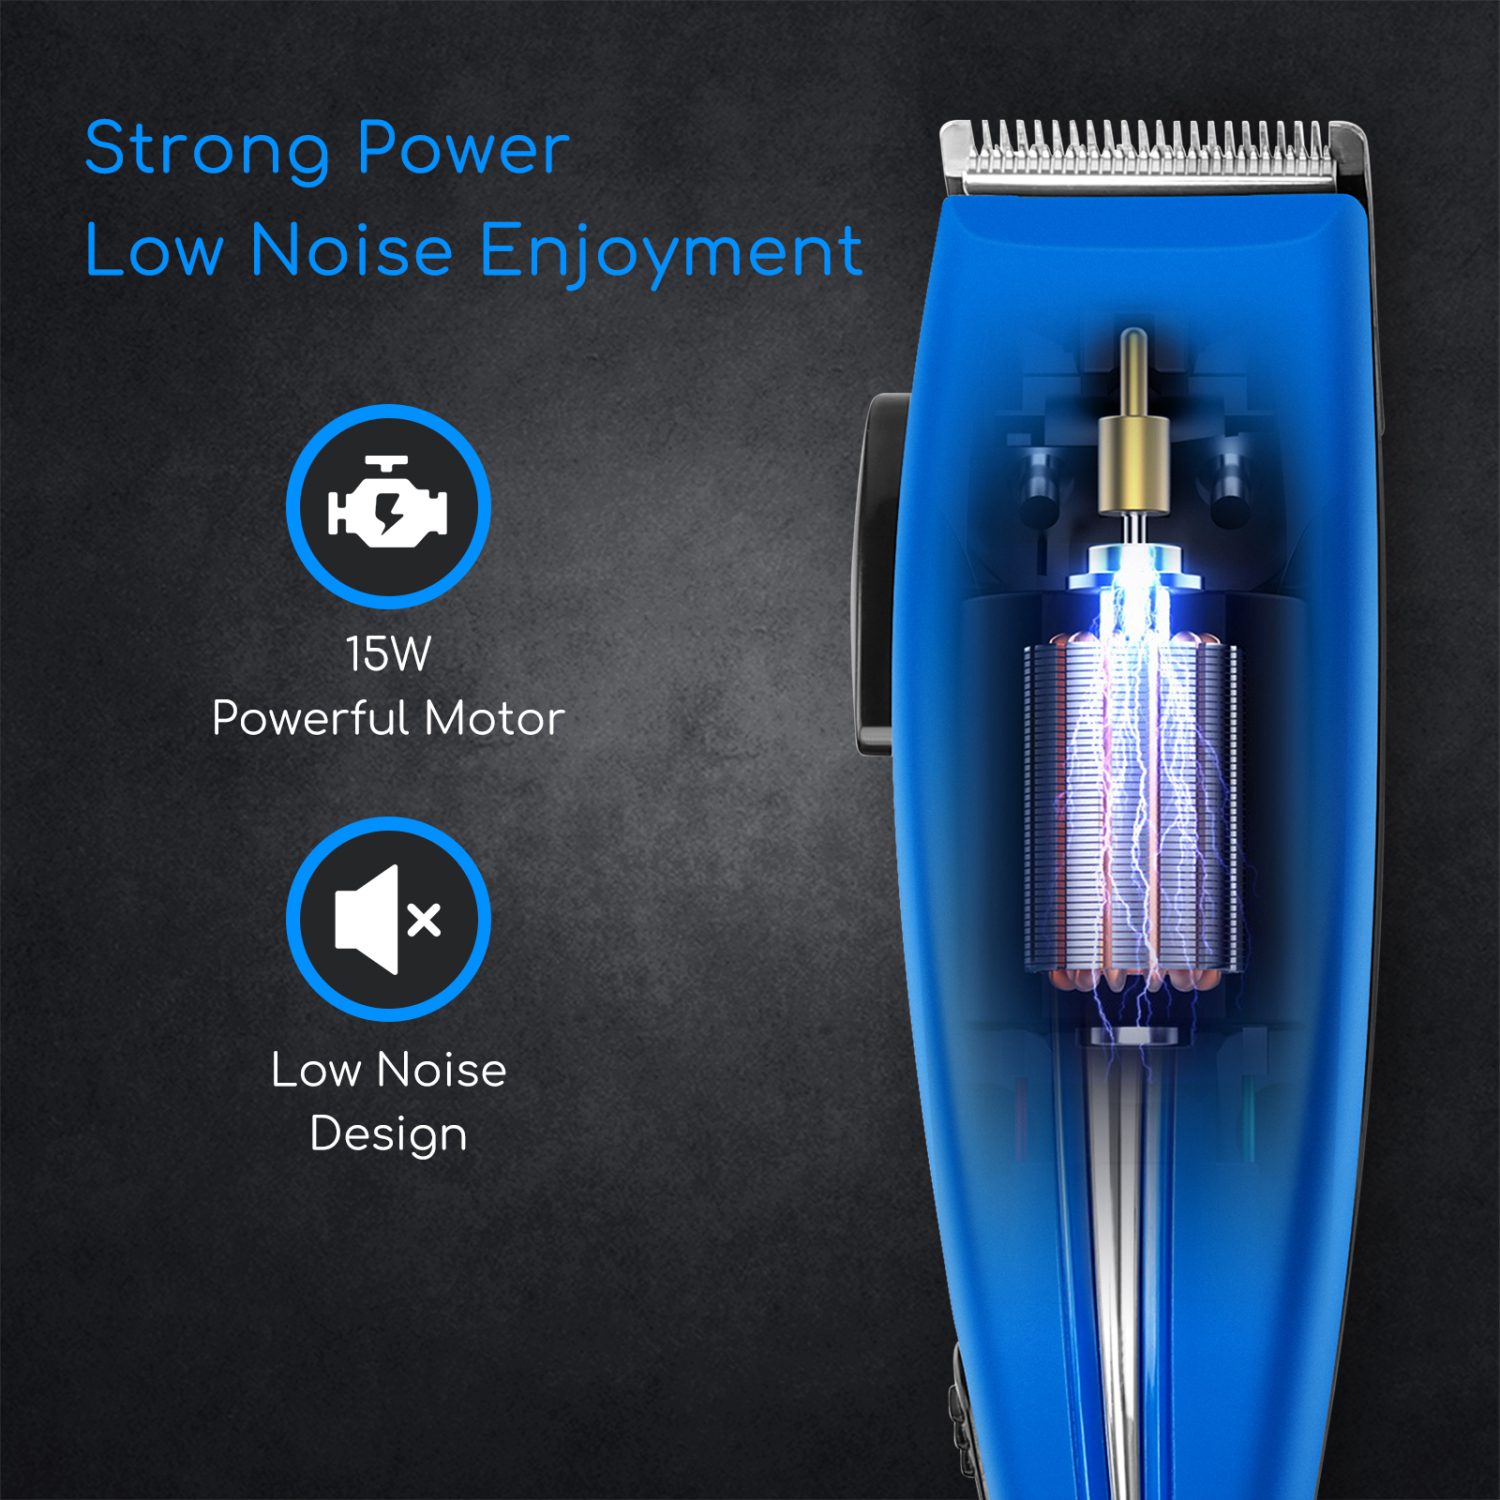 Aigostar Blueflash 32JVN - Taglia capelli, 4 pettini, 3 regolazioni regolabili, 15 Watts AC Motore, blu. Design esclusivo.